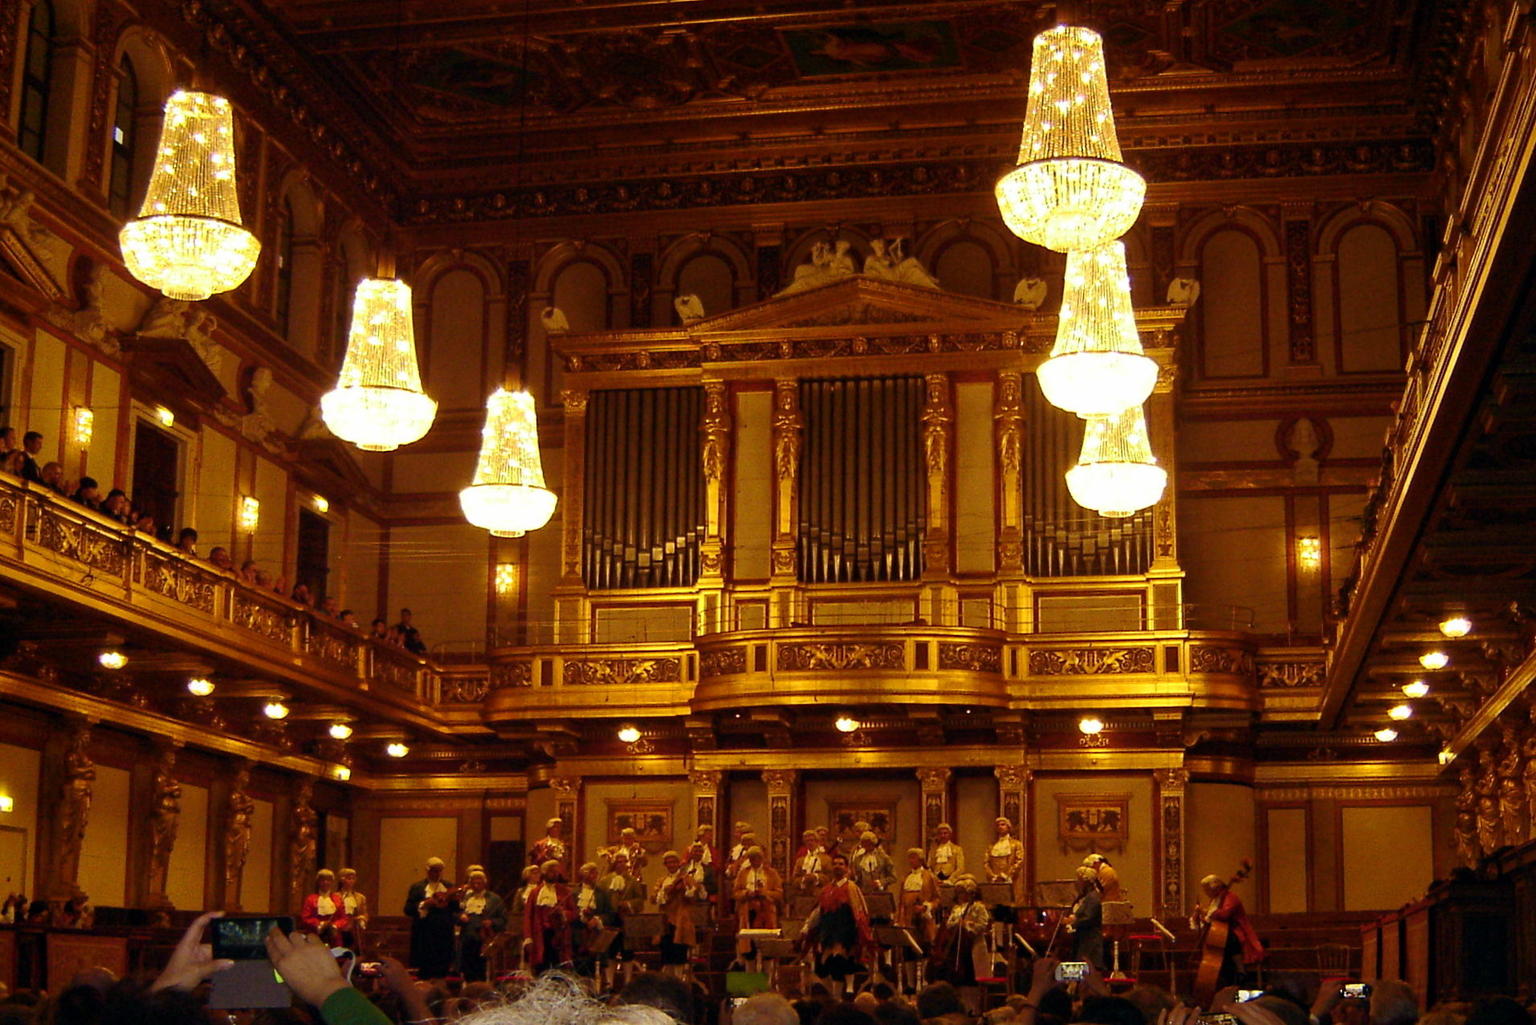 Musikverein concert hall